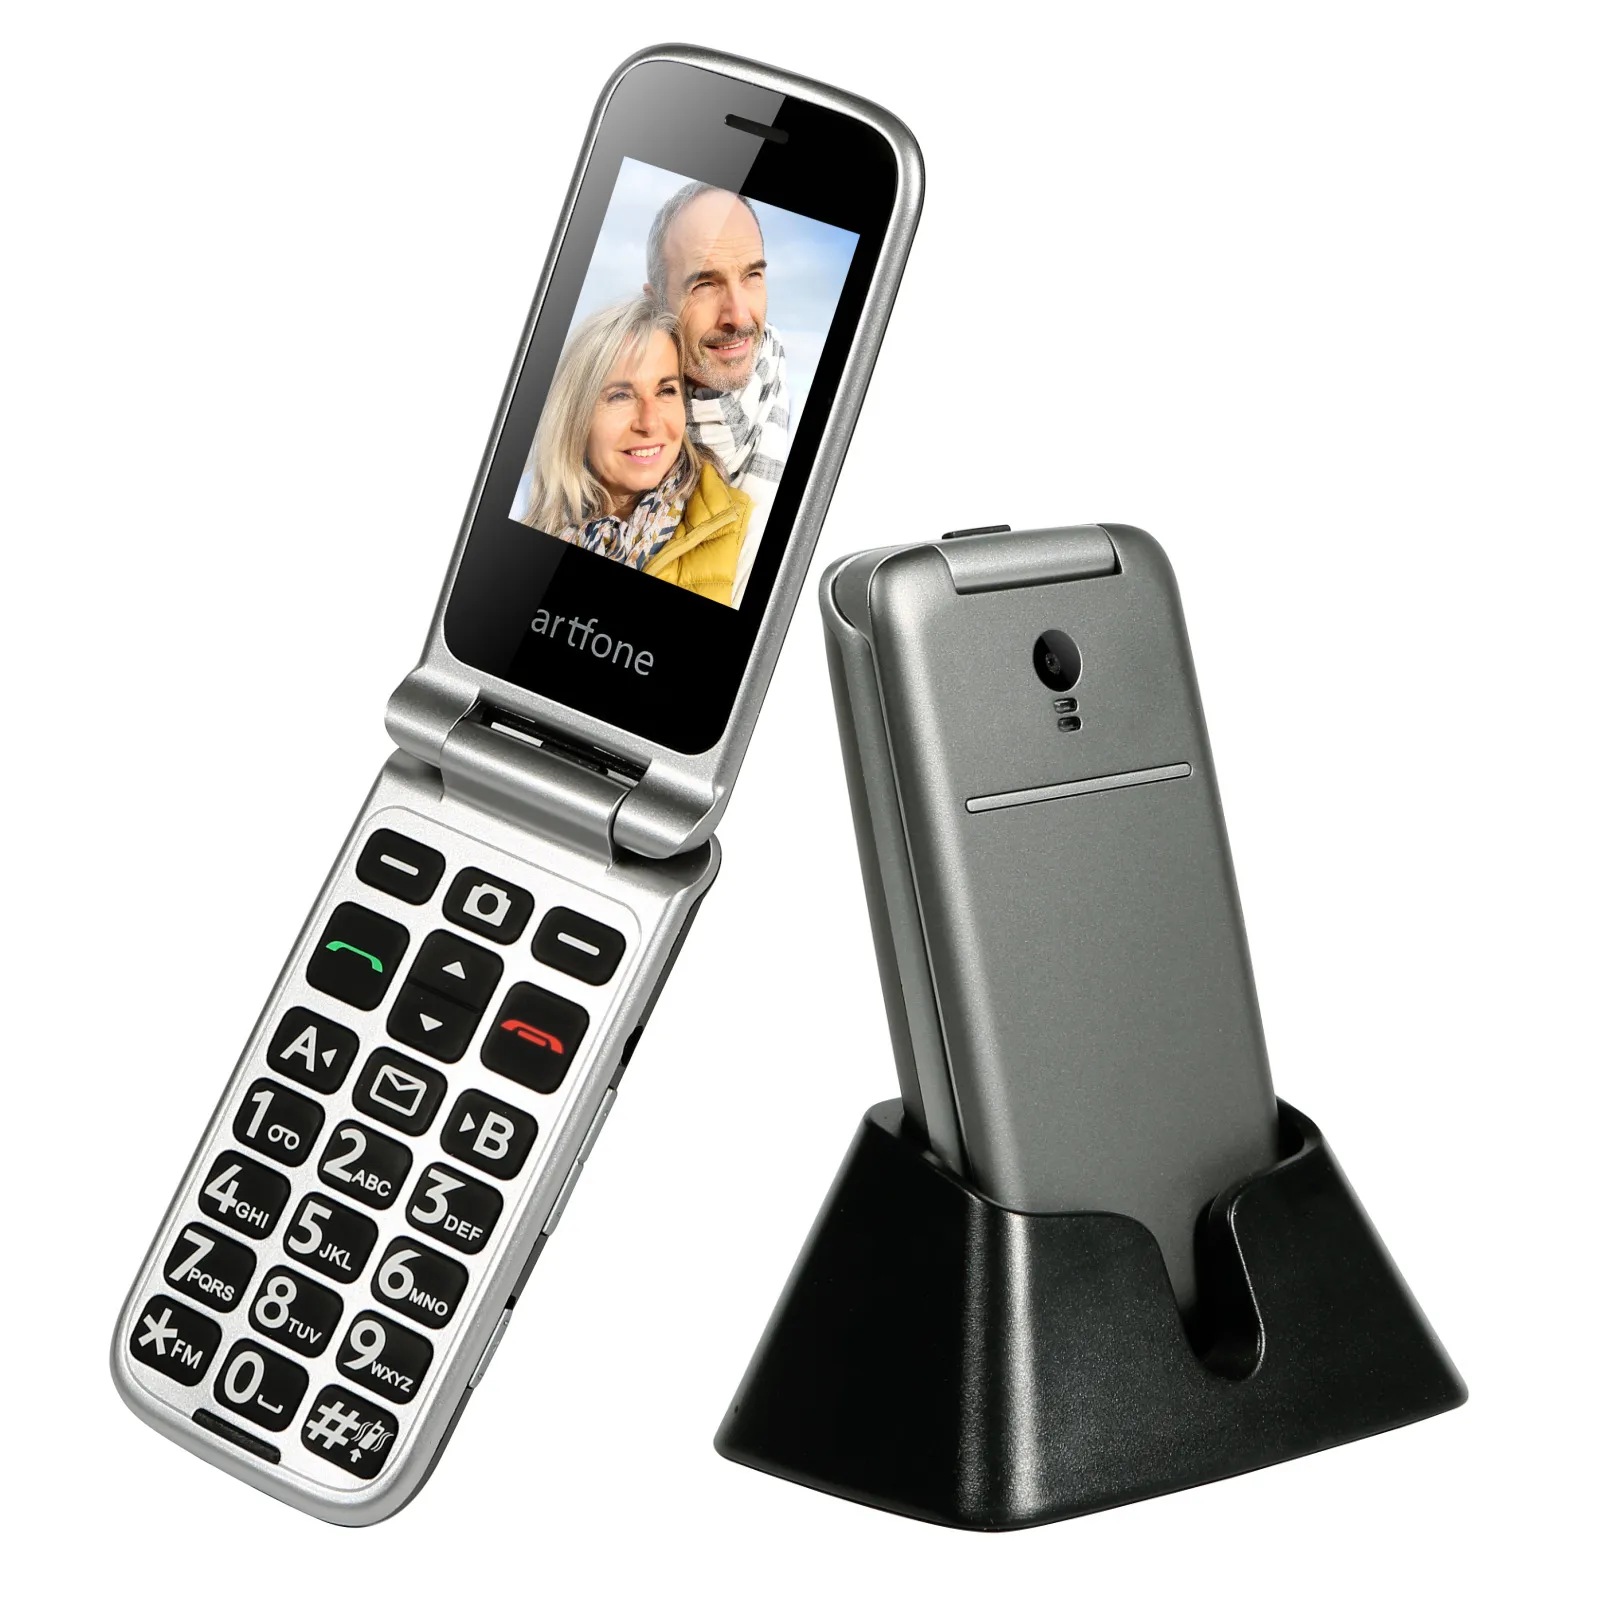 Оригинал Artfone G3 WCDMA 3G Flip Mobile Phone для пожилой однопроизводительной карты Большая резиновая клавиатура 2 боковые кнопки и SOS 1000MAH с зарядным мобильным телефоном дока